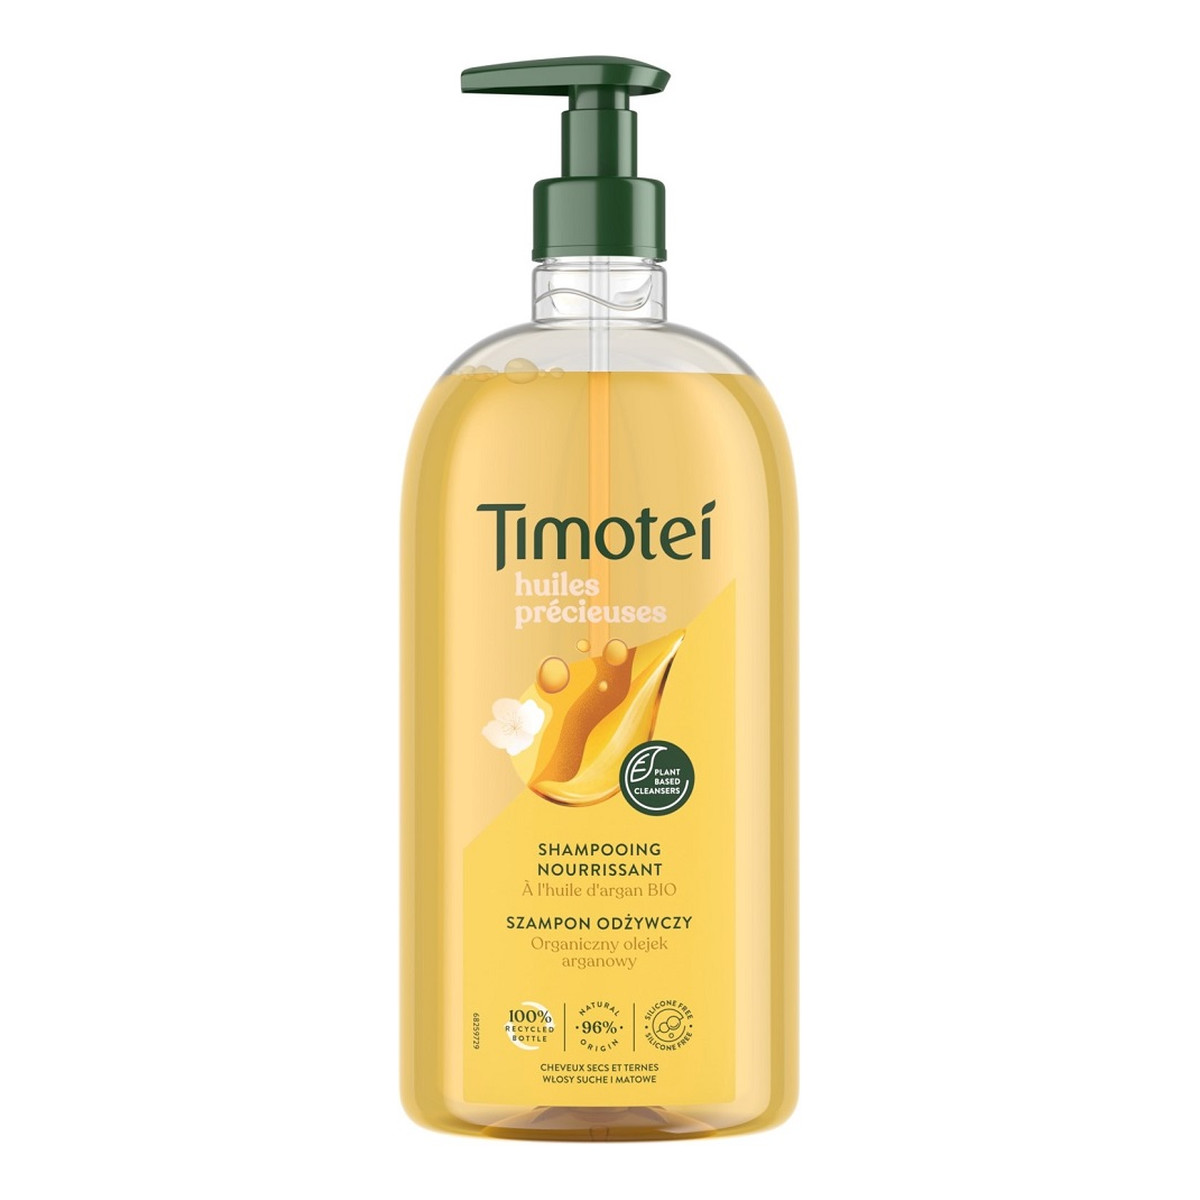 Timotei Precious oils Szampon odżywczy do włosów suchych i matowych z organicznym olejkiem arganowym 750ml